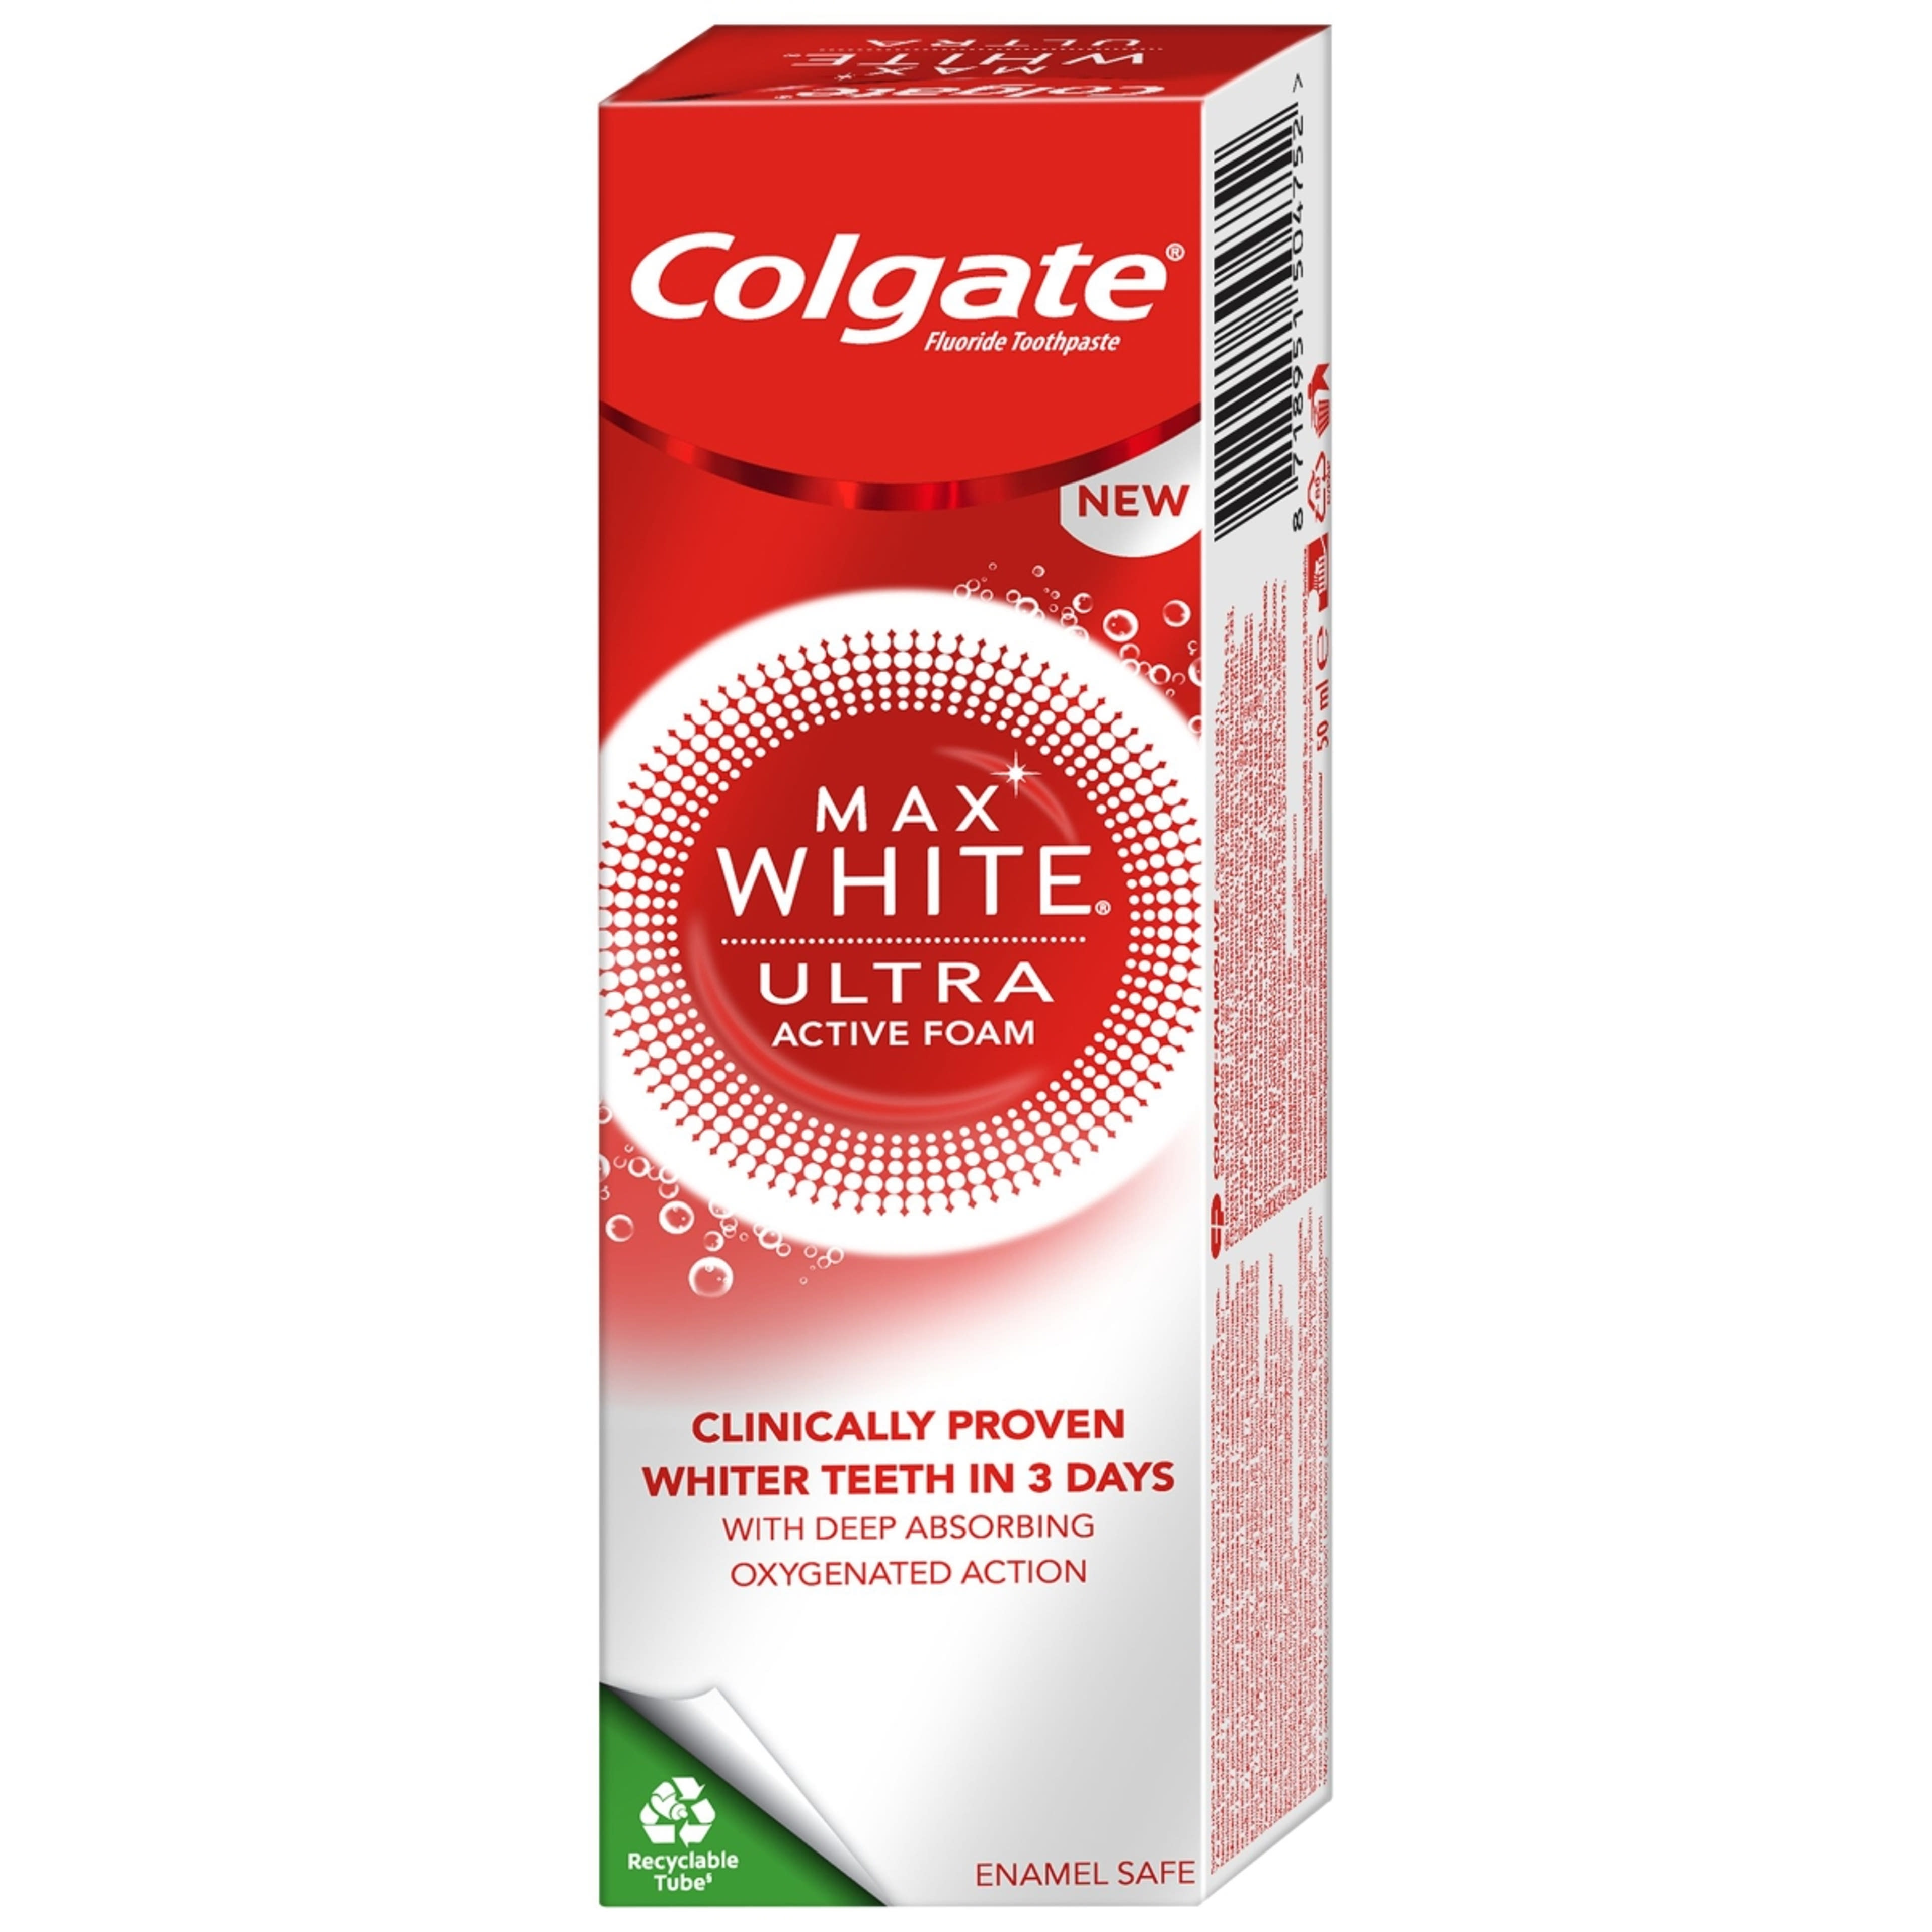 Colgate Max White Ultra Active Foam Whitening fogkrém - 50ml-5